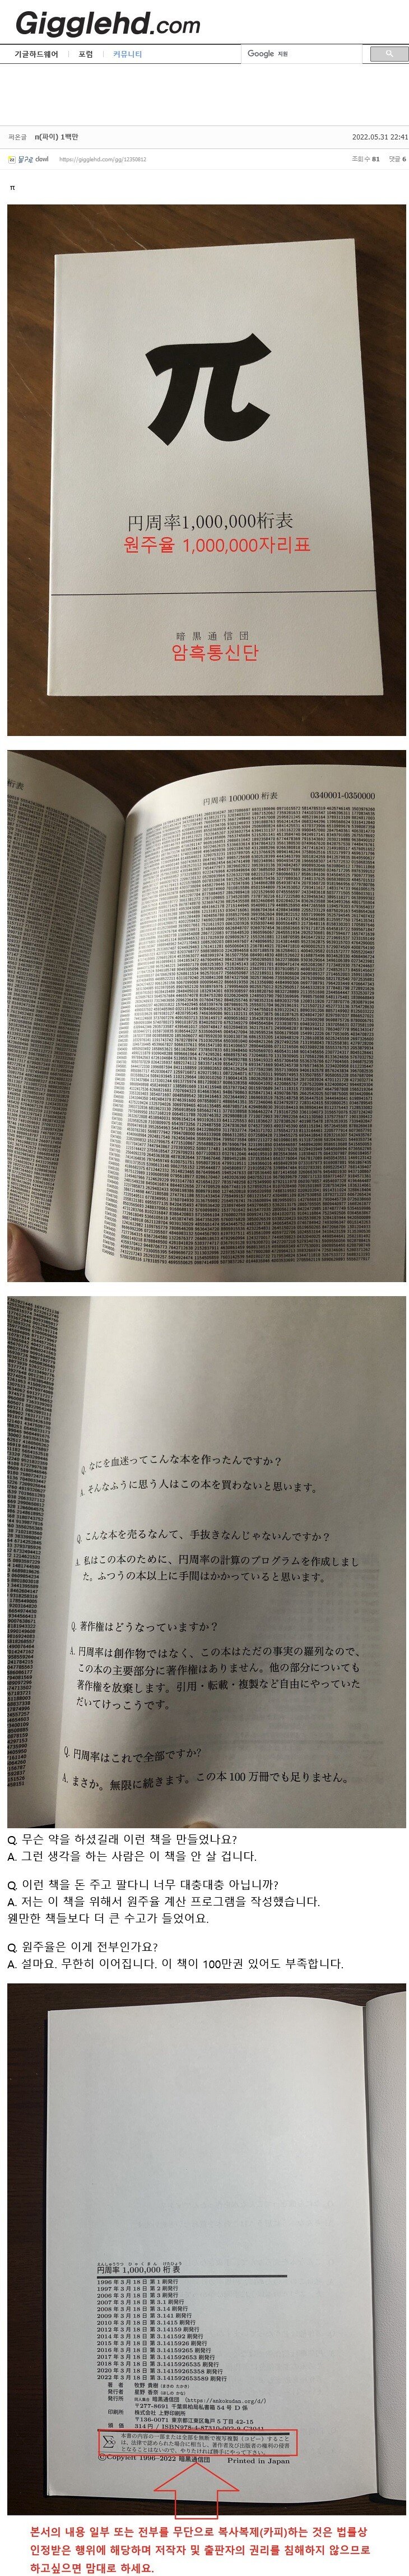 11 일본에서 26년동안 출판 되는 찐광기 책.jpg